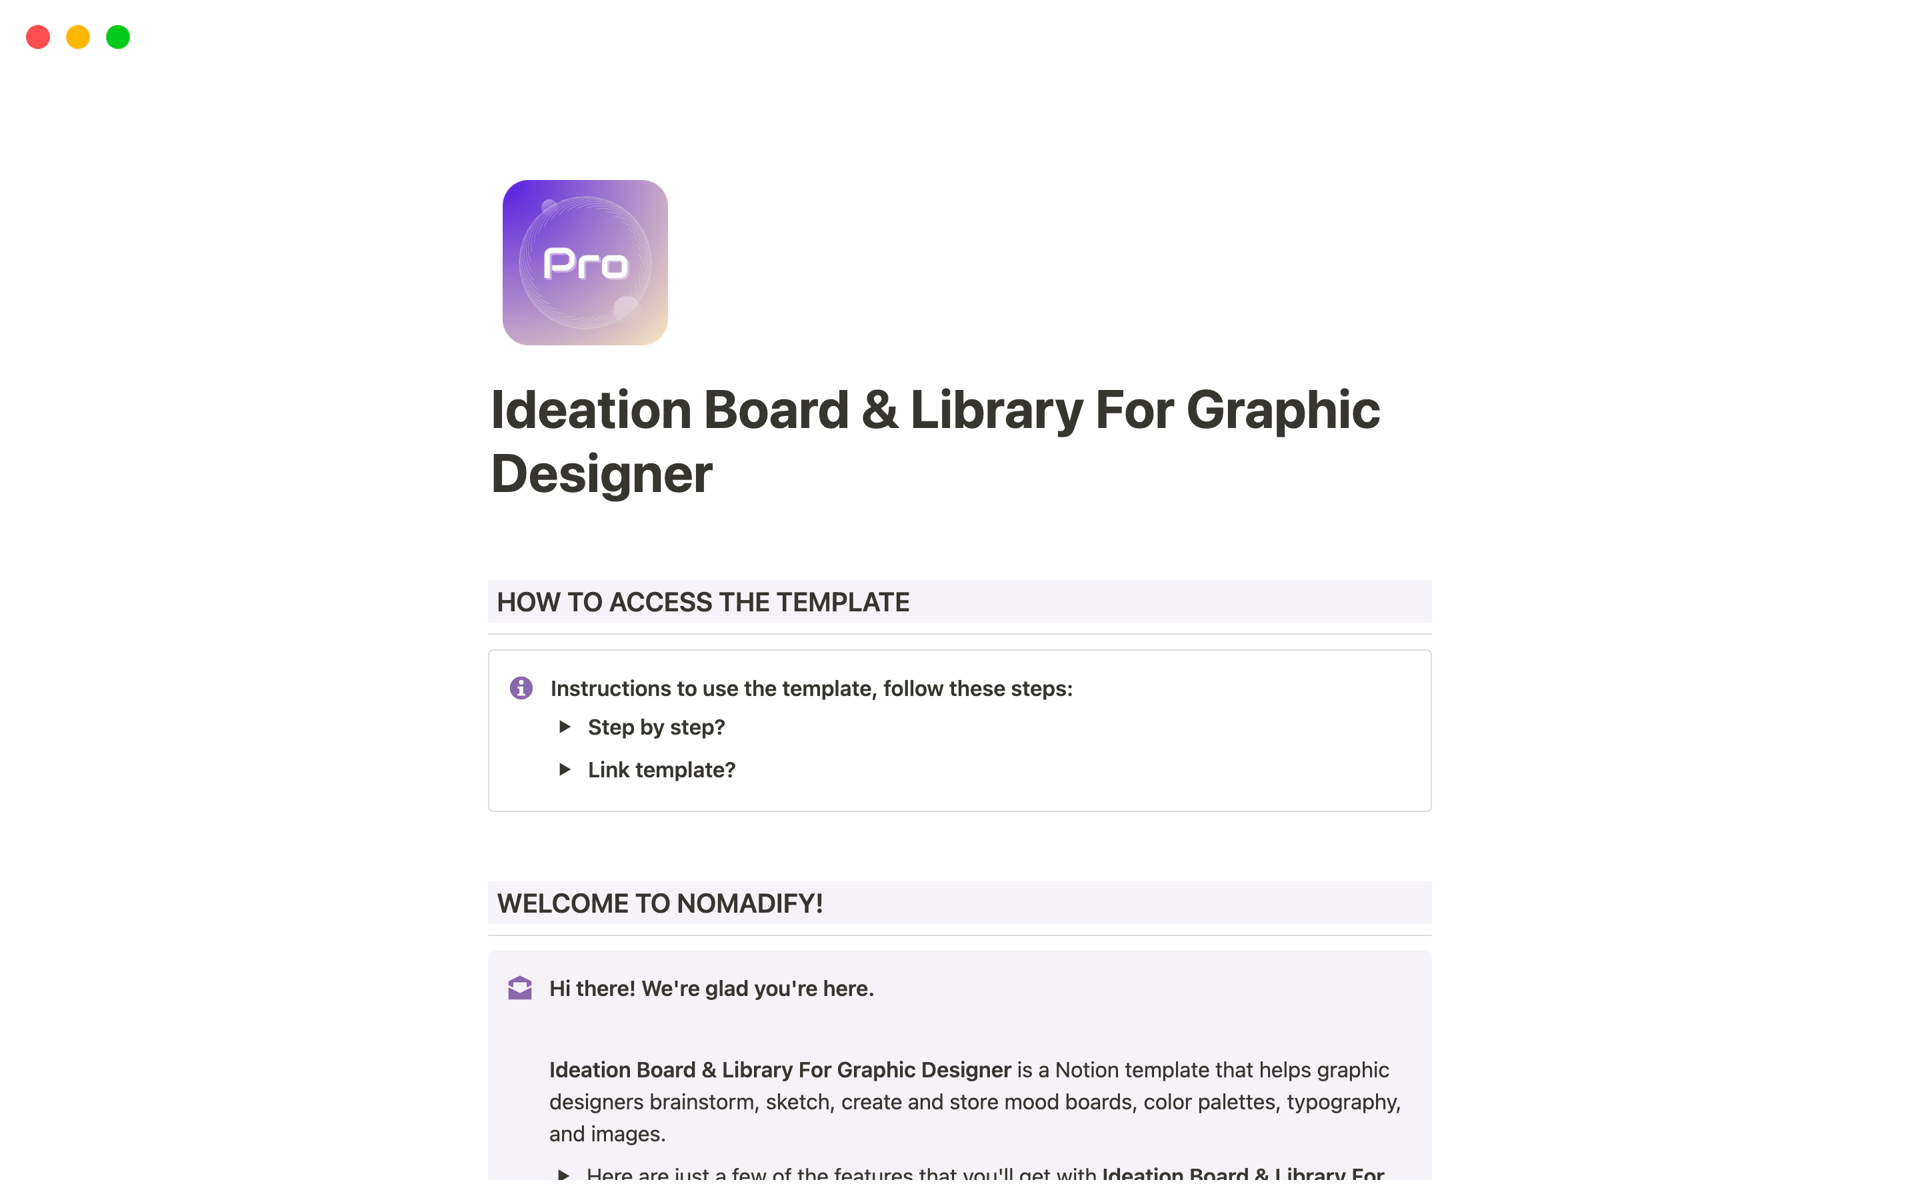 Uma prévia do modelo para Ideation Board & Library For Graphic Designer